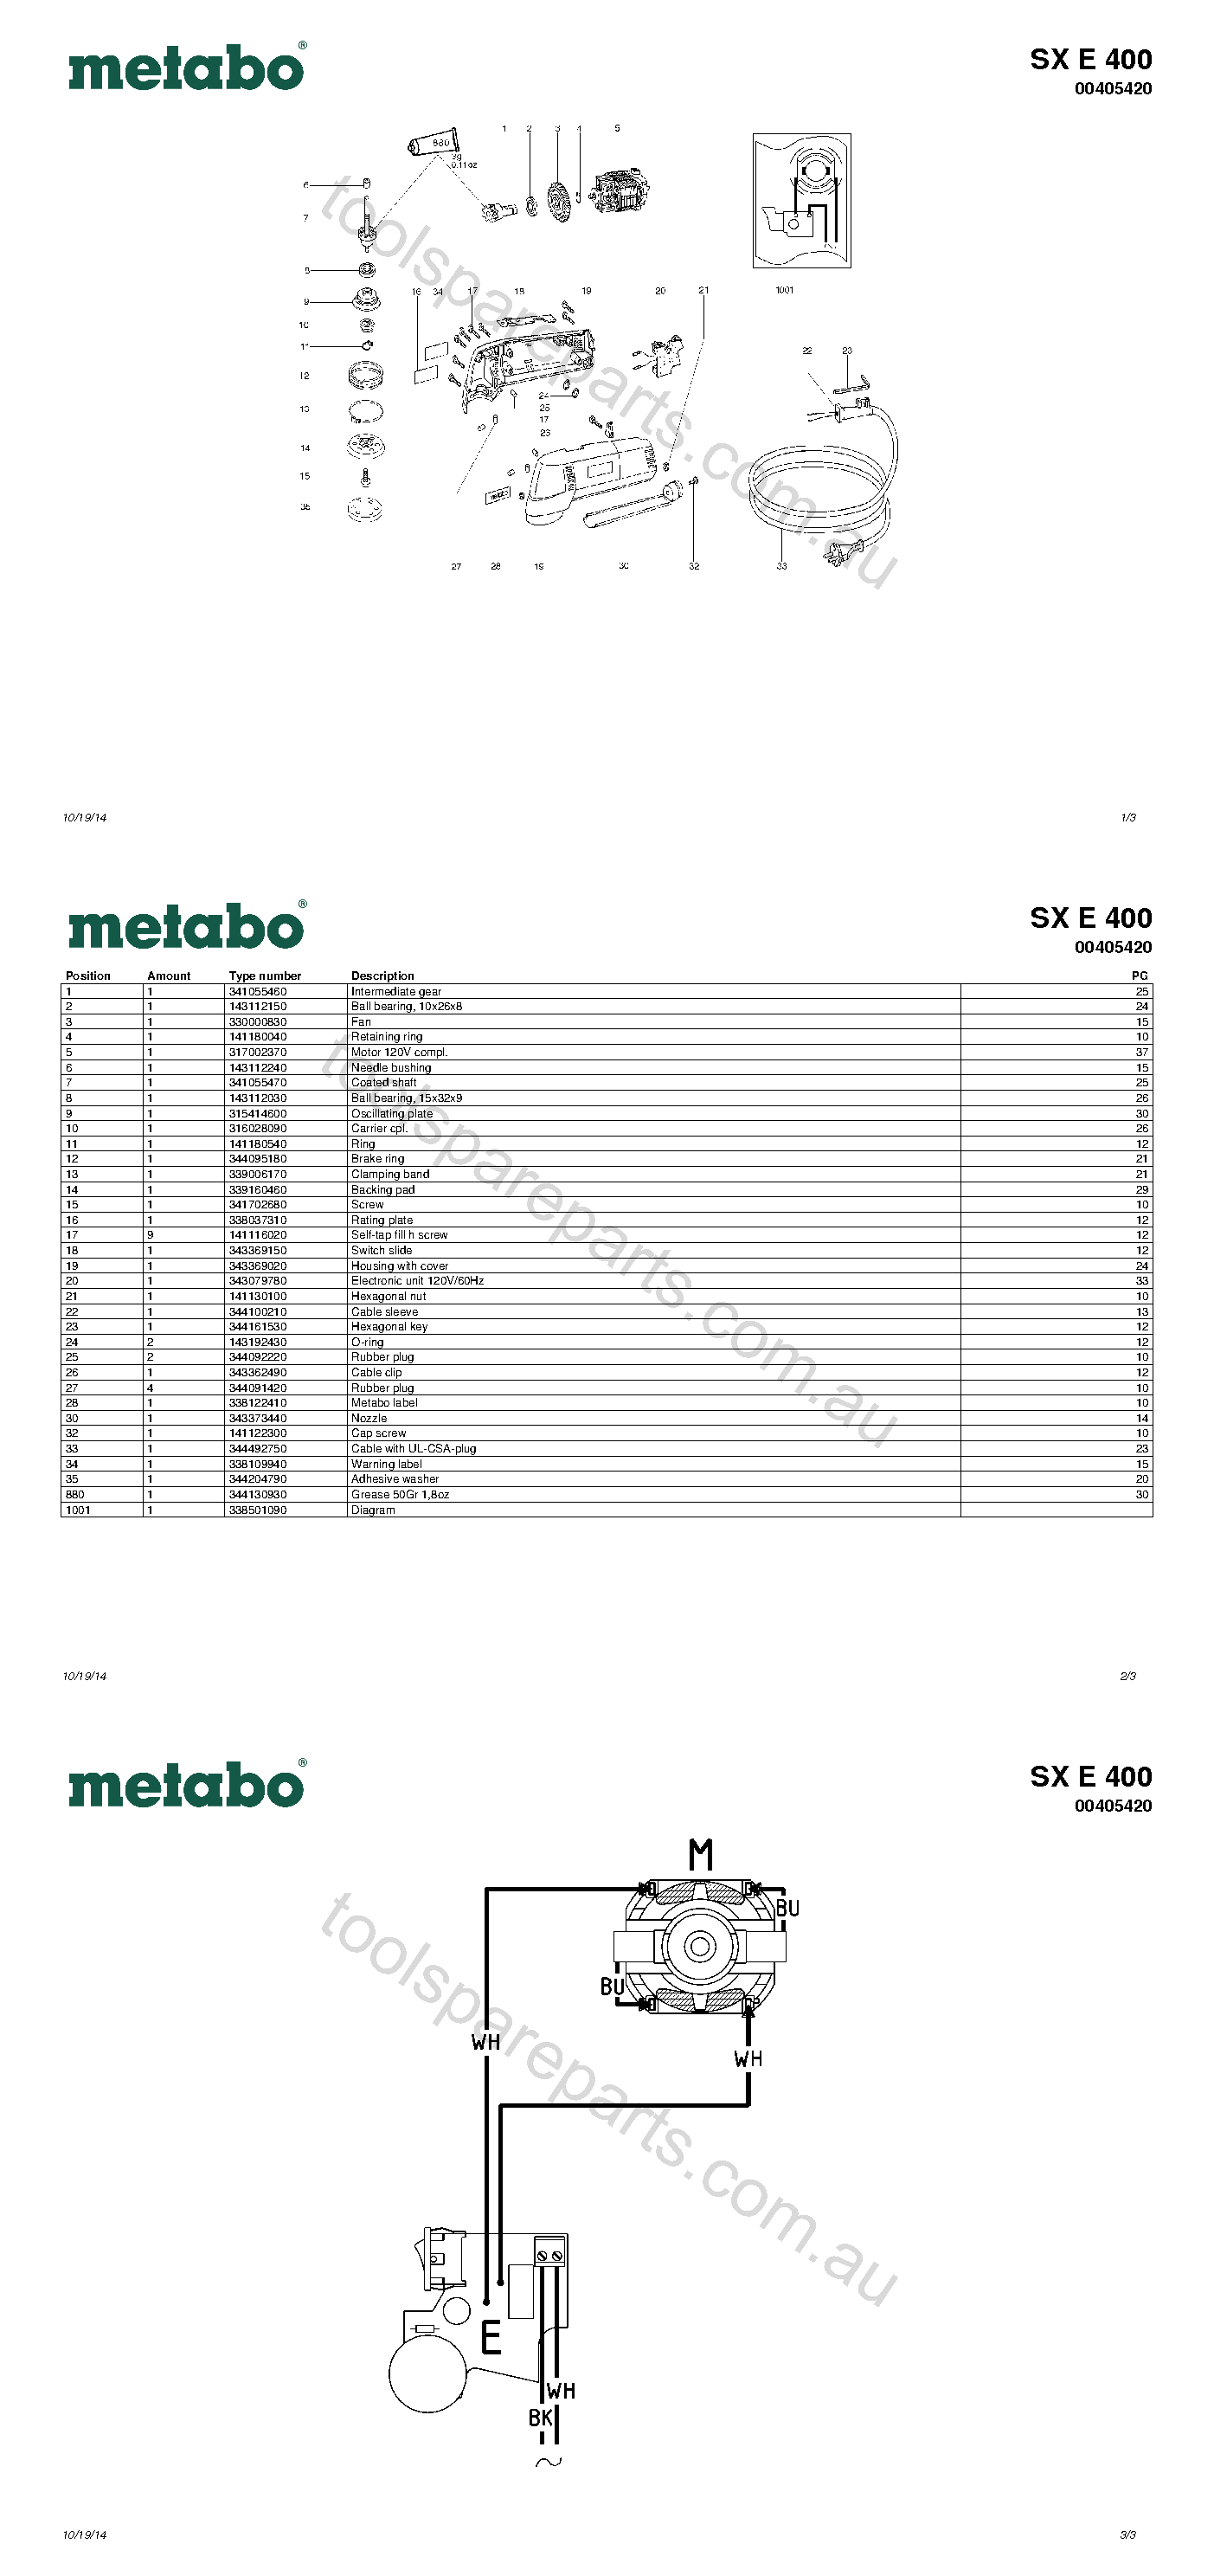 Metabo SX E 400 00405420  Diagram 1